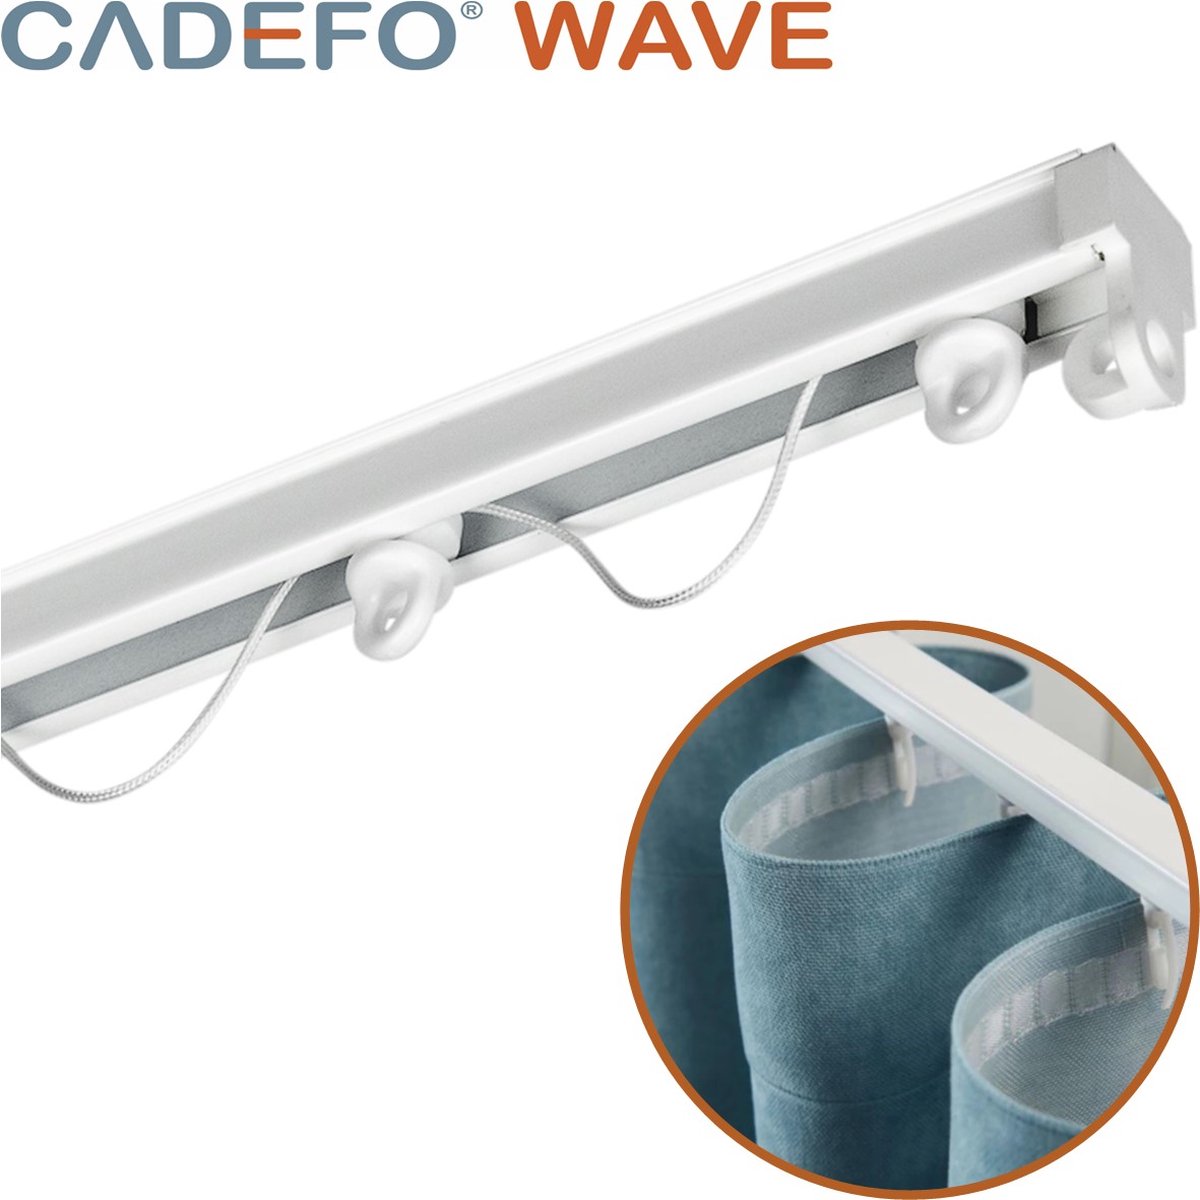 CADEFO WAVE (501 - 550 cm) Gordijnrails - Compleet op maat! - UIT 1 STUK - Leverbaar tot 6 meter - Plafondbevestiging - Lengte 509 cm